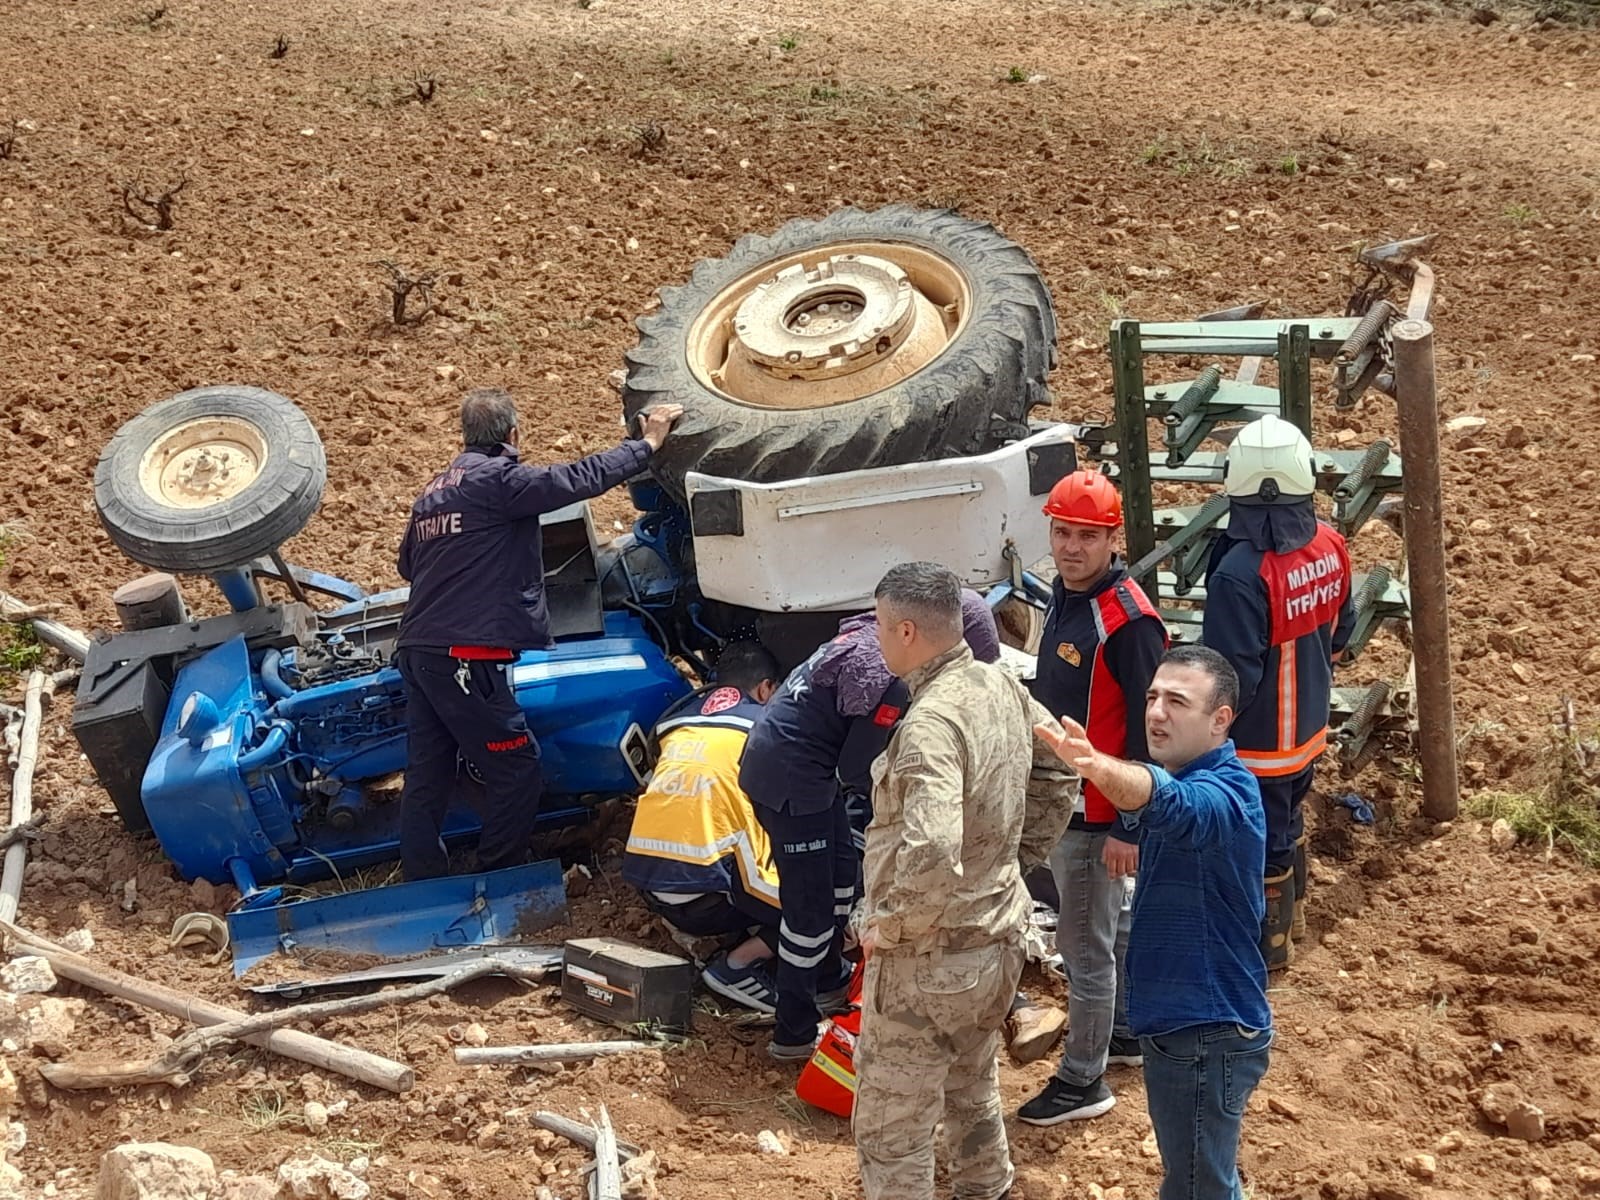 Mardin’de devrilen traktörün sürücüsü öldü